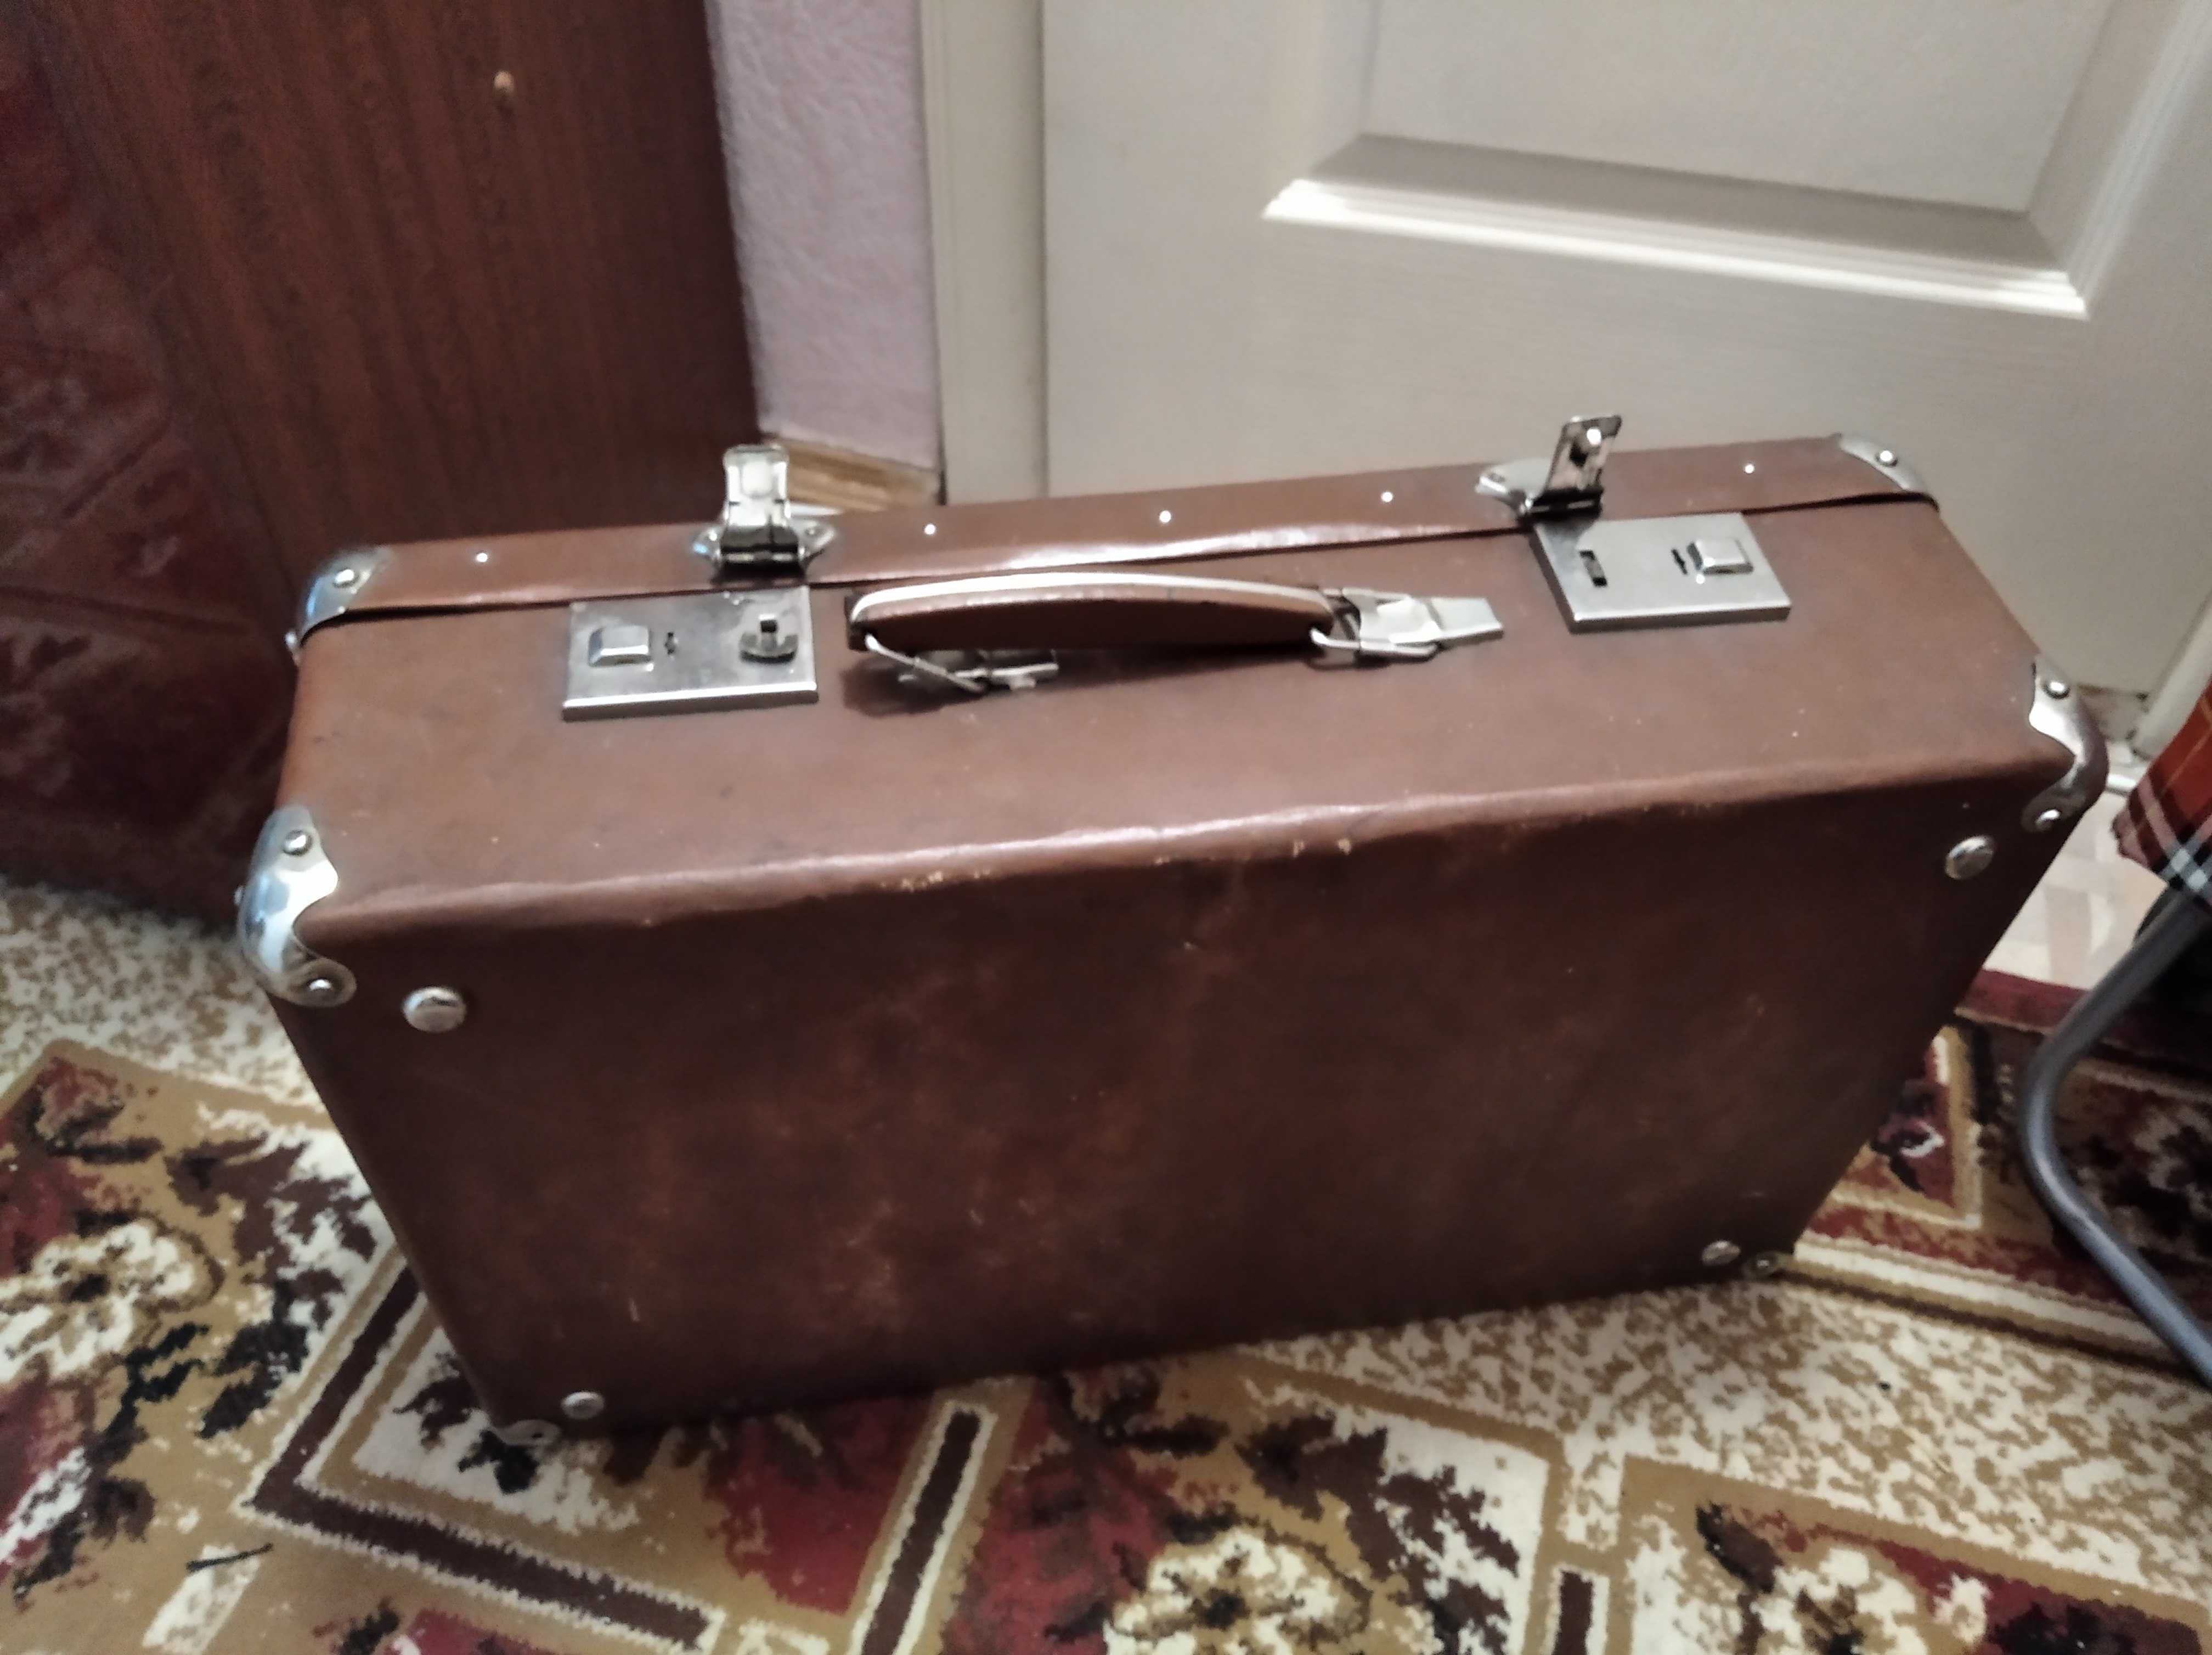 Винтажный старинный ретро чемодан вализа СССР раритет коричневый